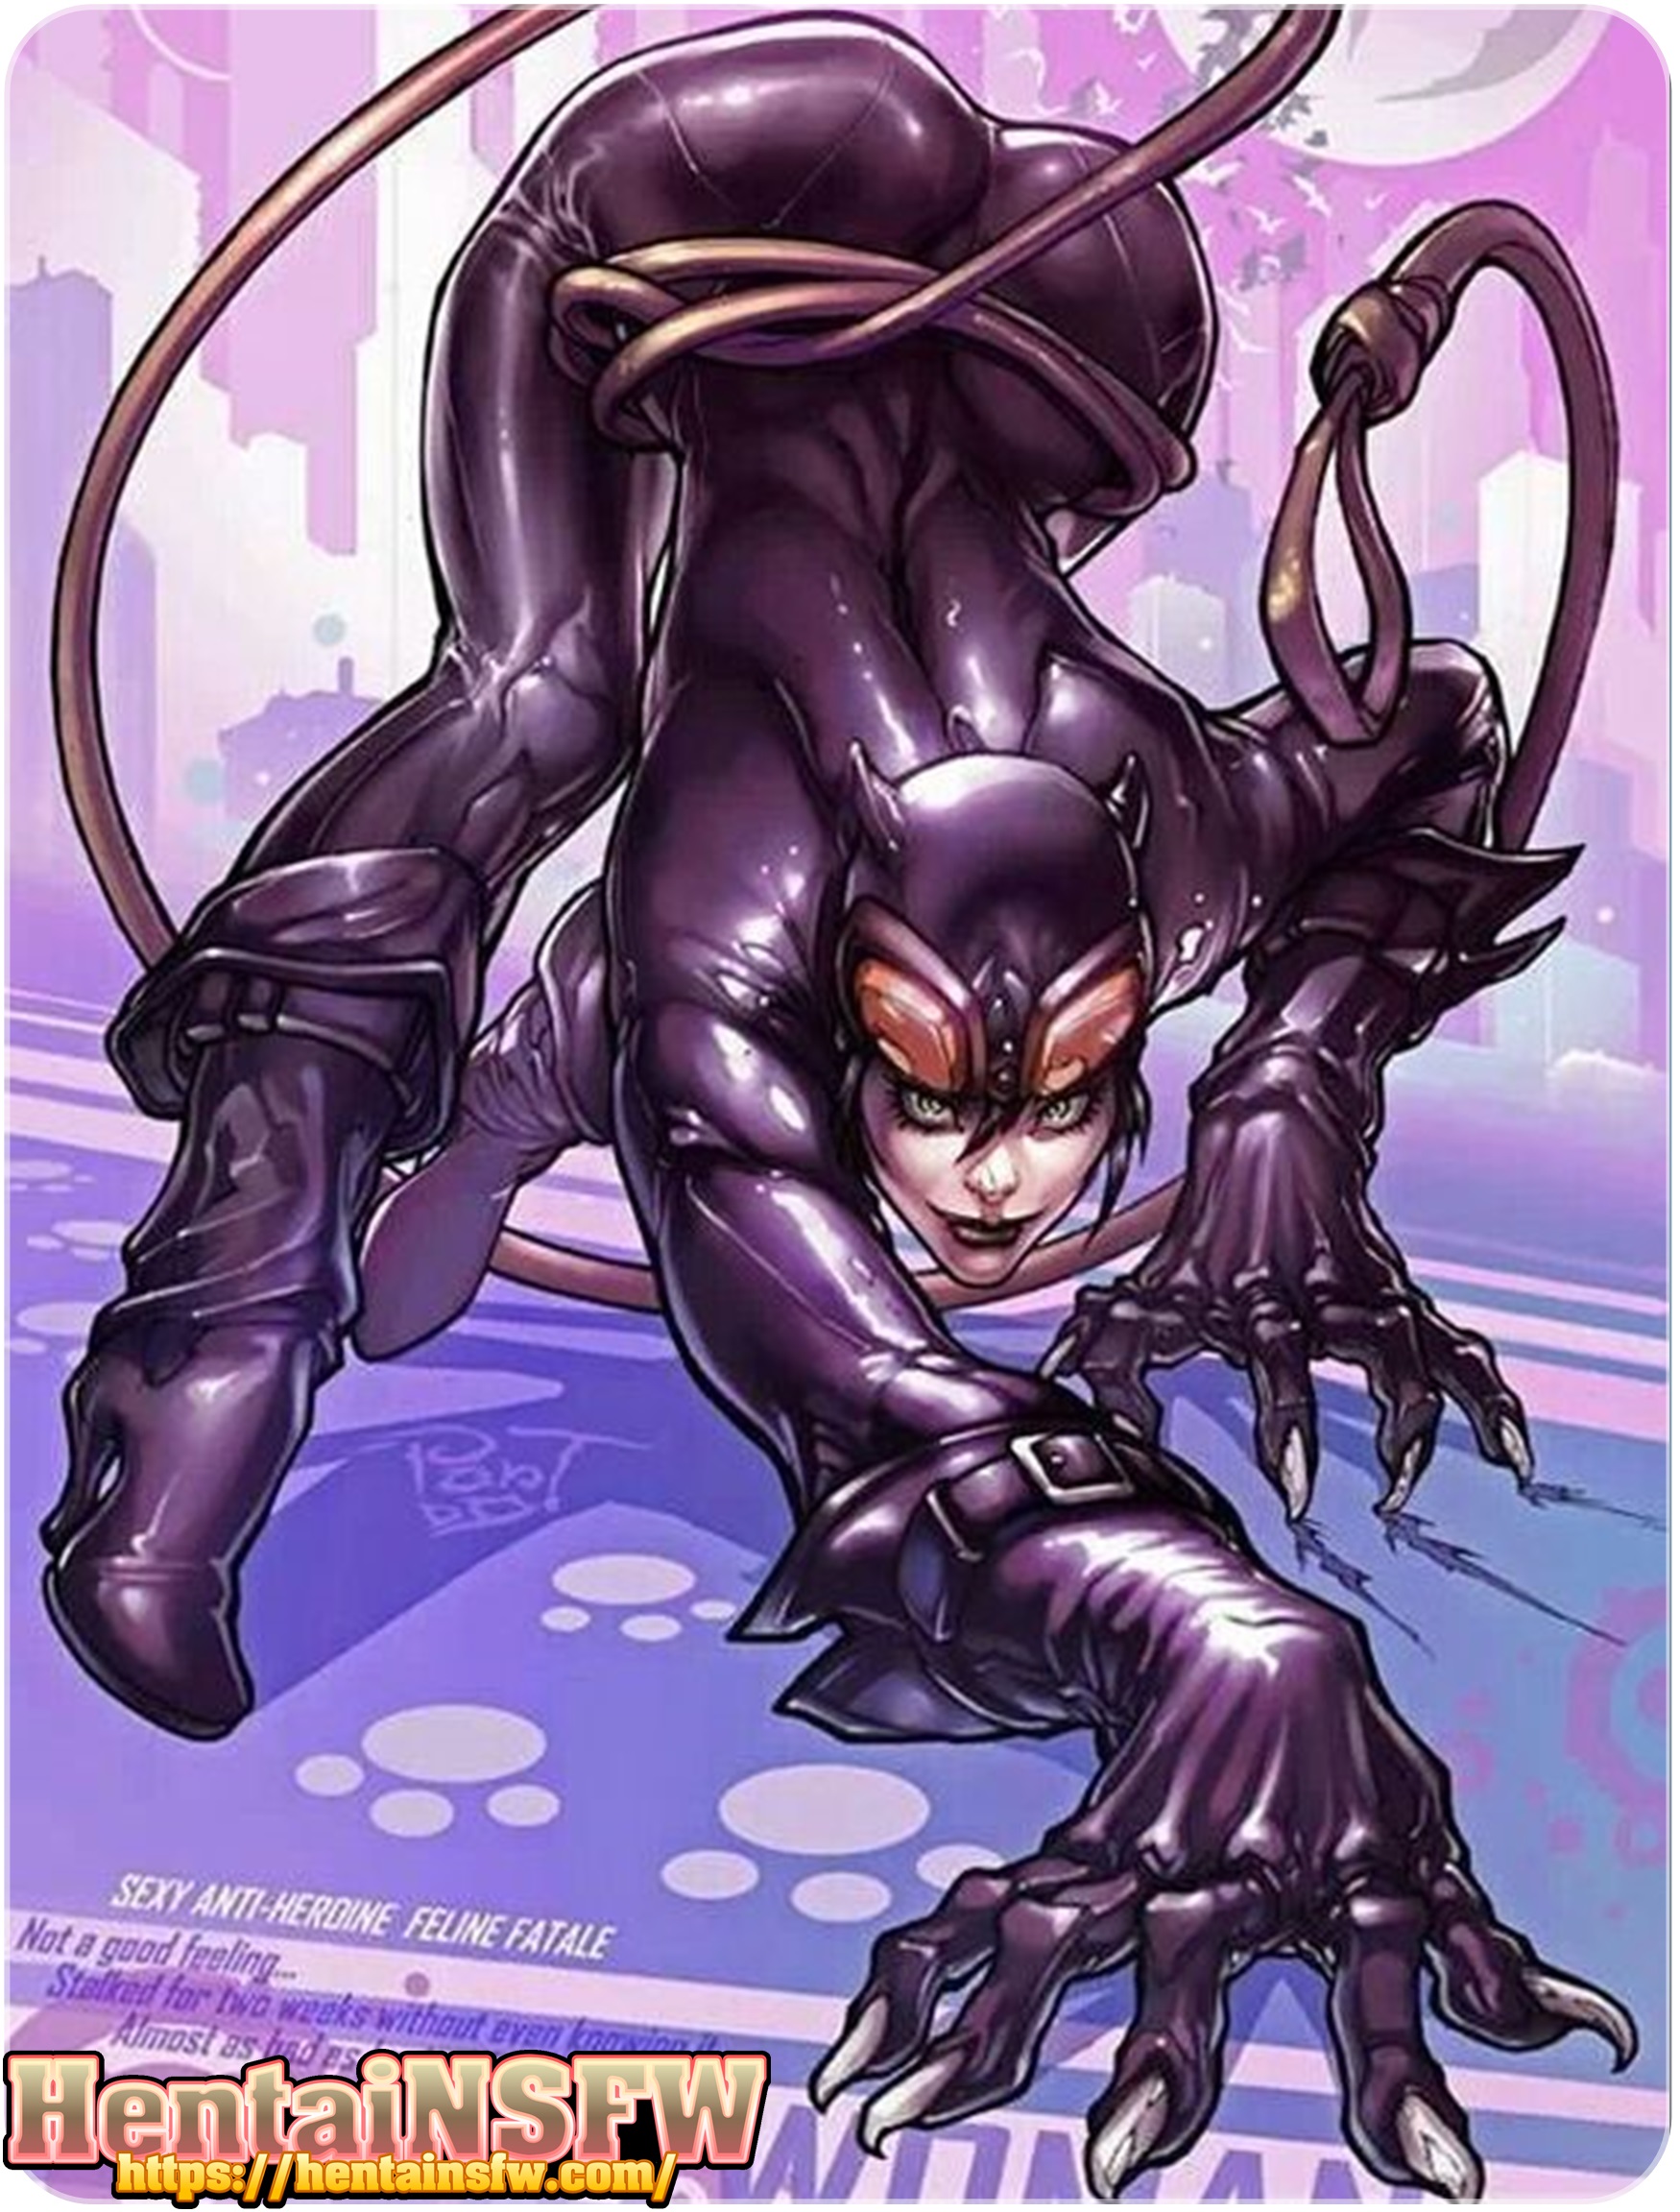 Flashlight Cartoon Porn - Catwoman Porn Comics | Sex Pictures Pass